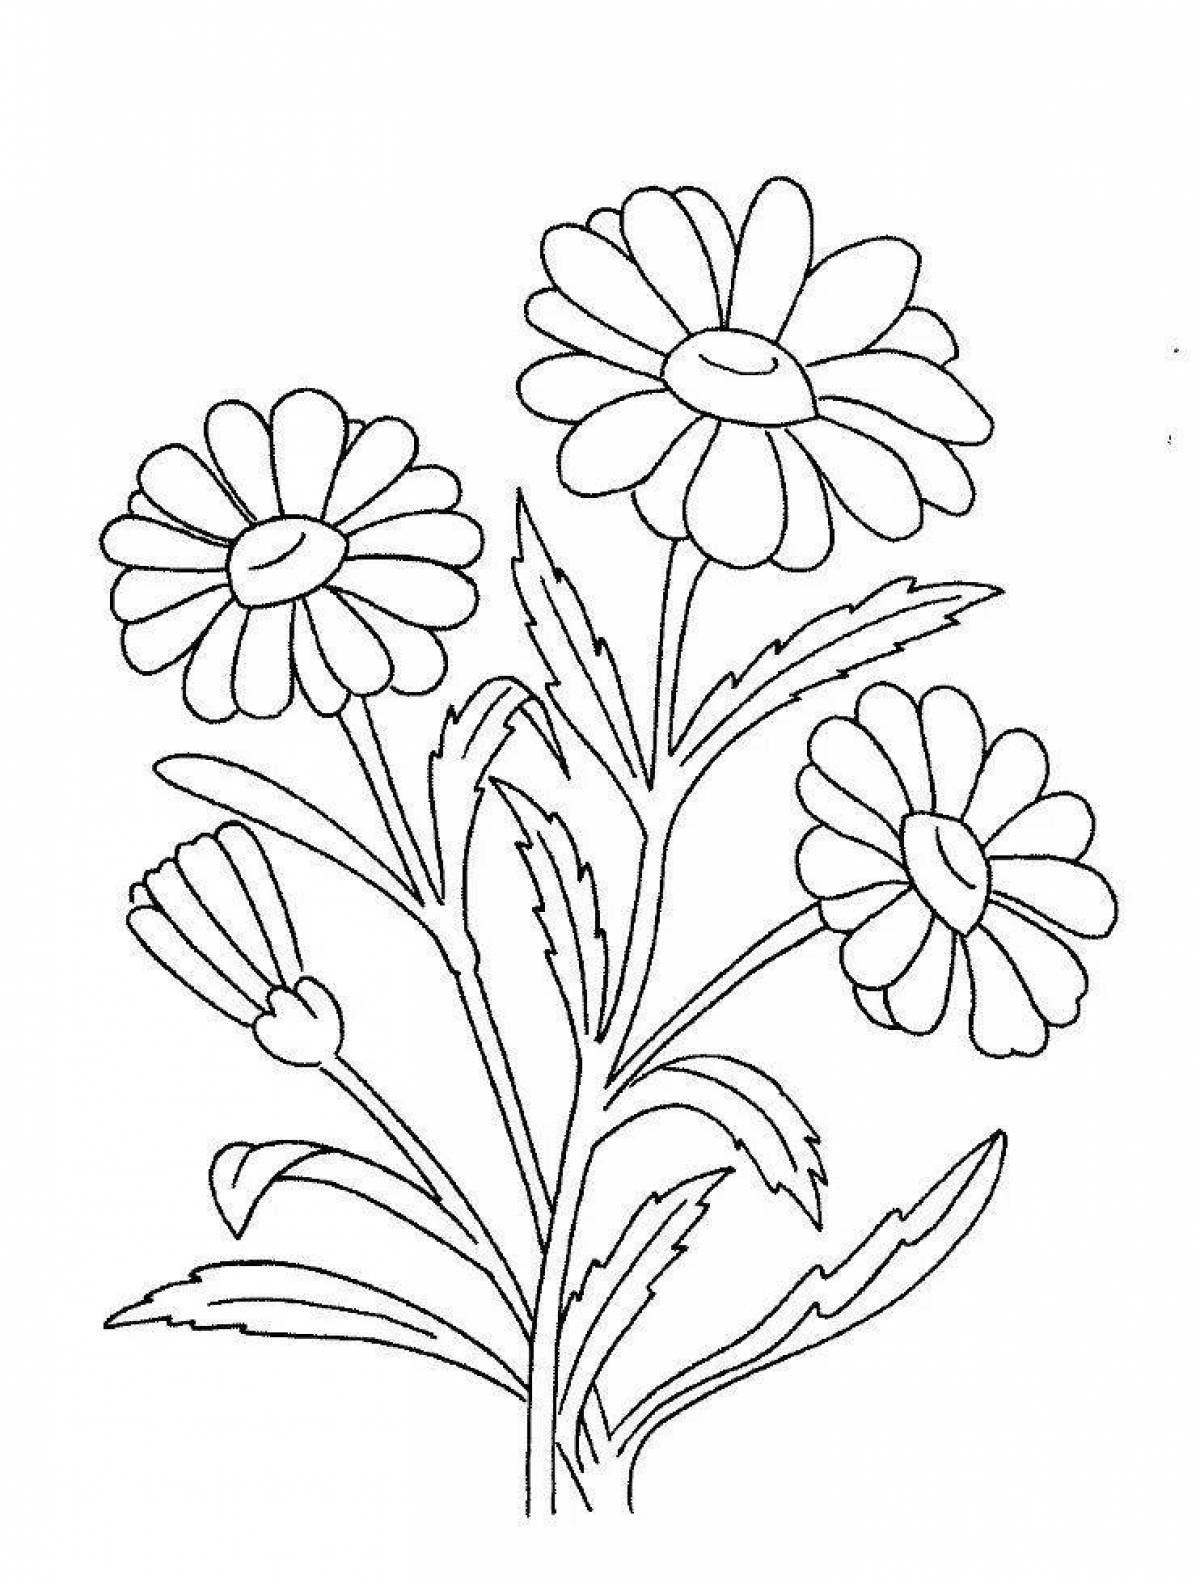 Освежающая страница раскраски цветка ромашки